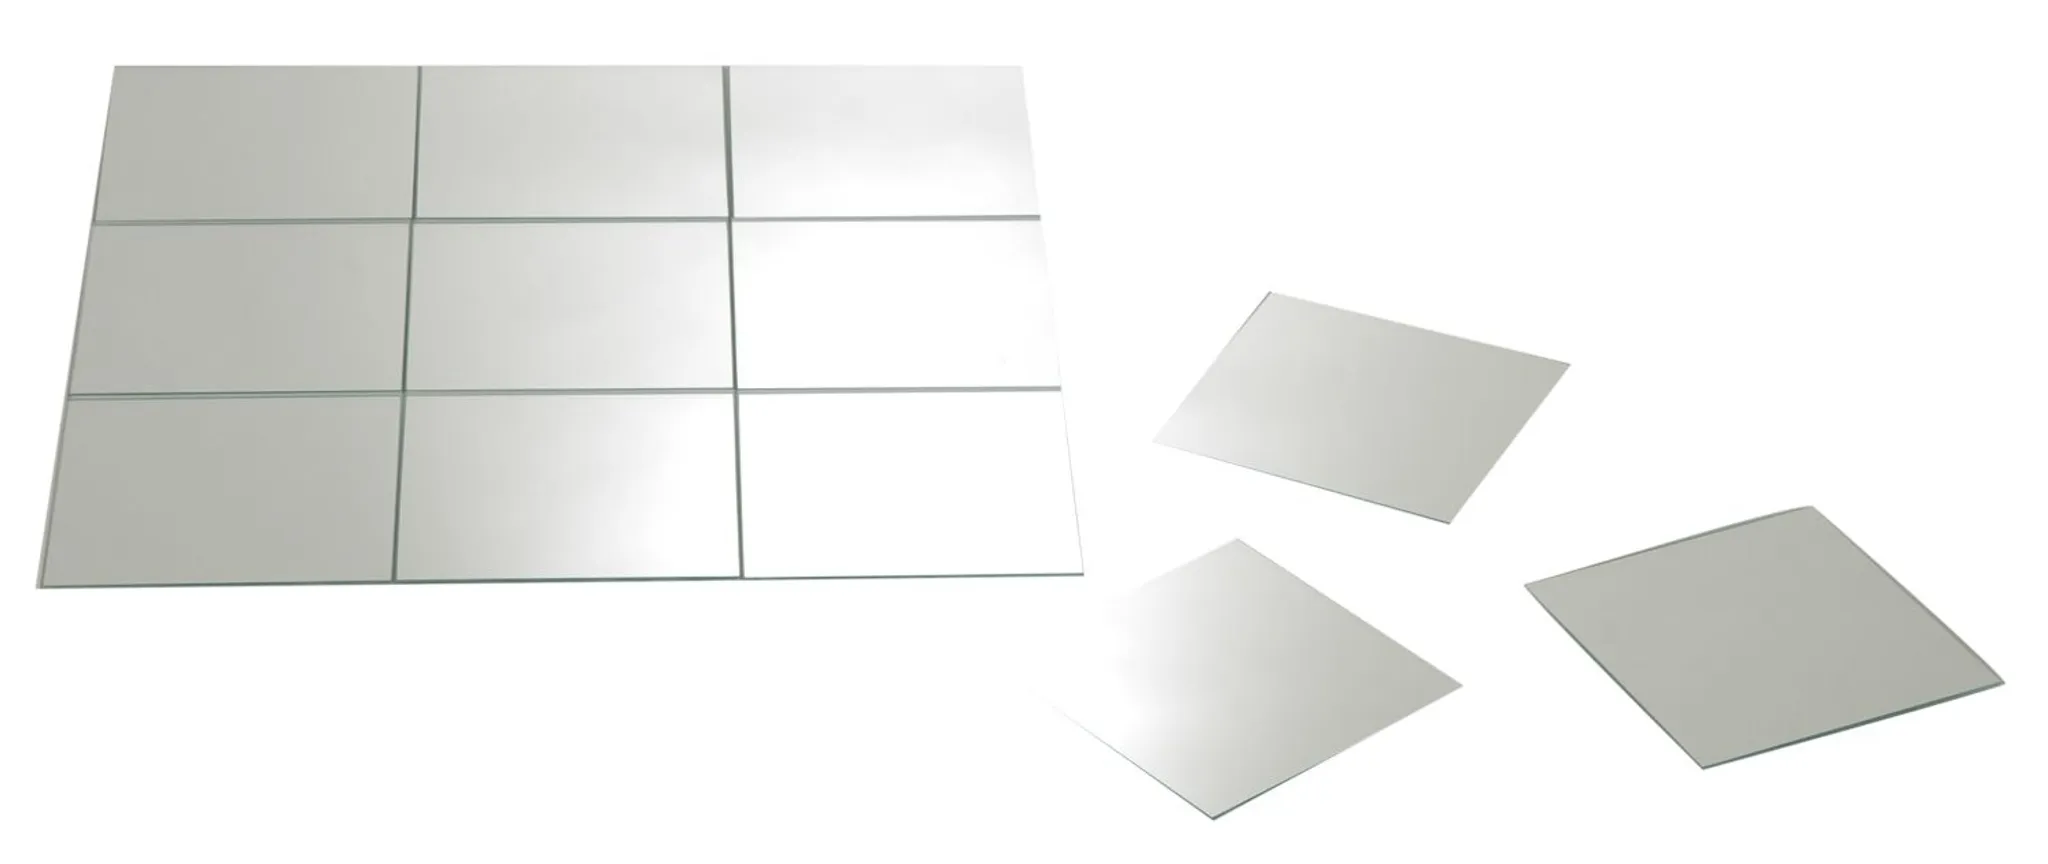 Deko Spiegel, selbstklebend, 10 x 10 mm, 150 Stück, silber